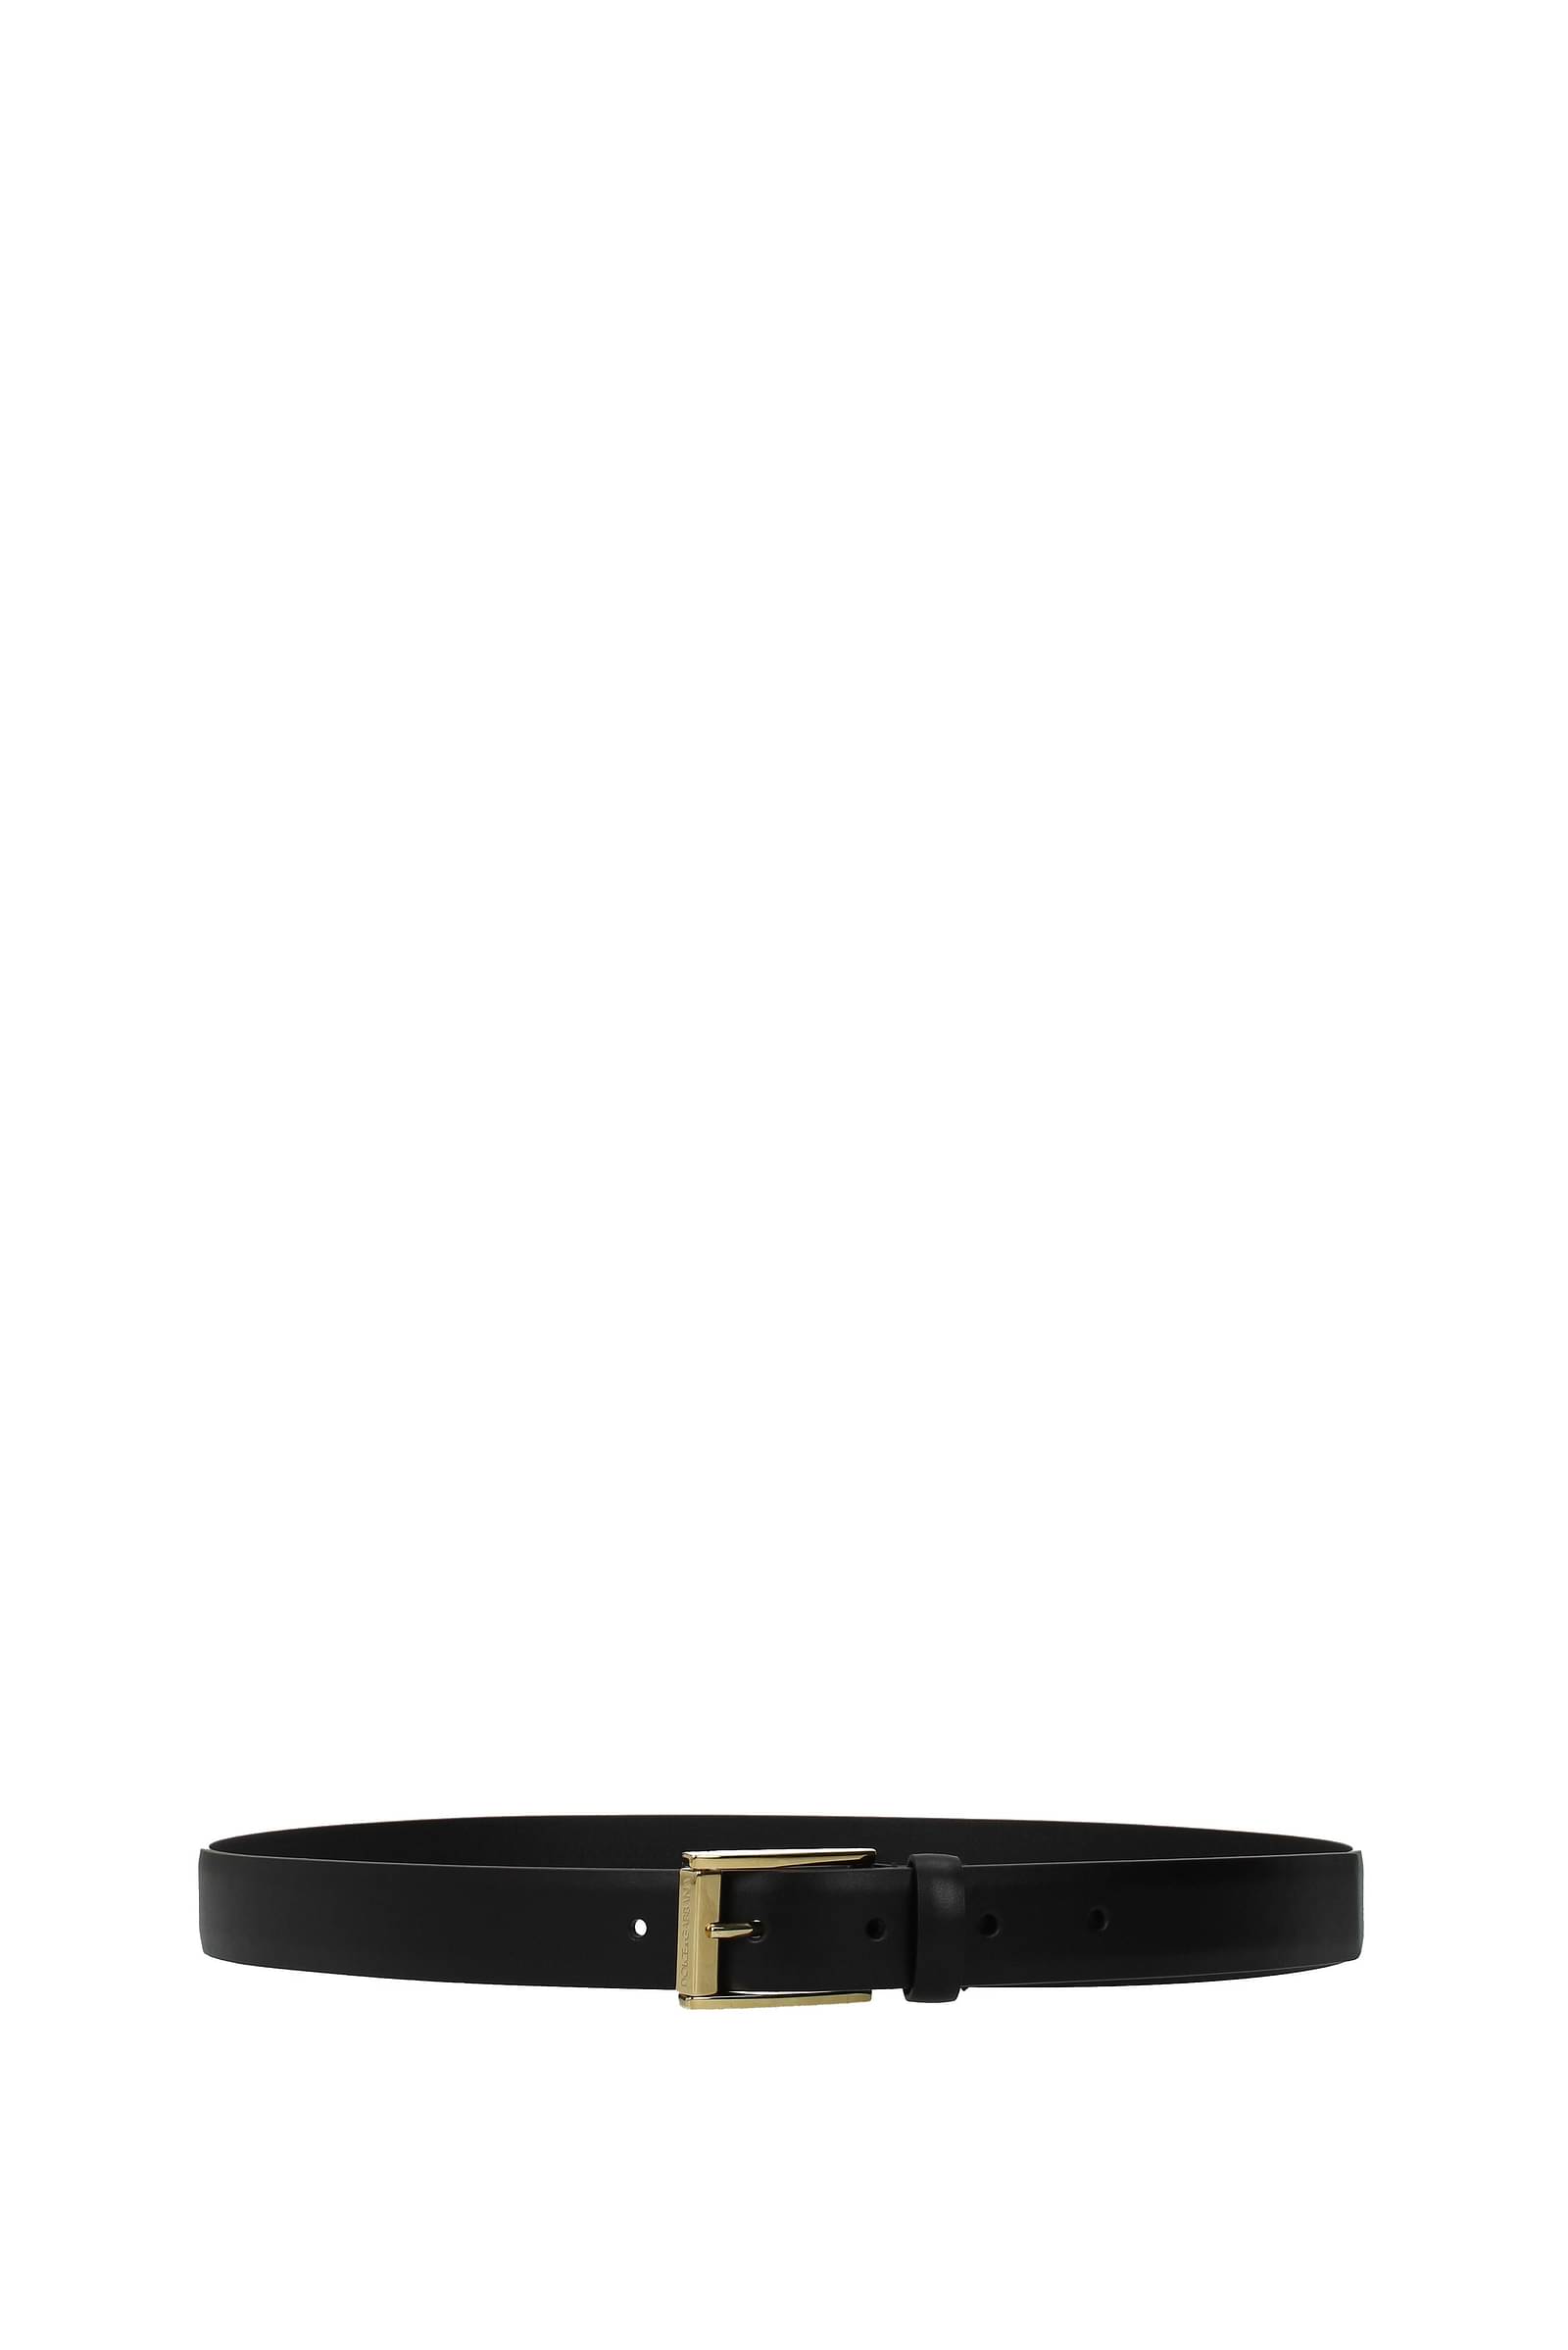 Cintura DG con logoDolce & Gabbana in Pelle di colore Nero Donna Accessori da uomo Cinture da uomo 7% di sconto 